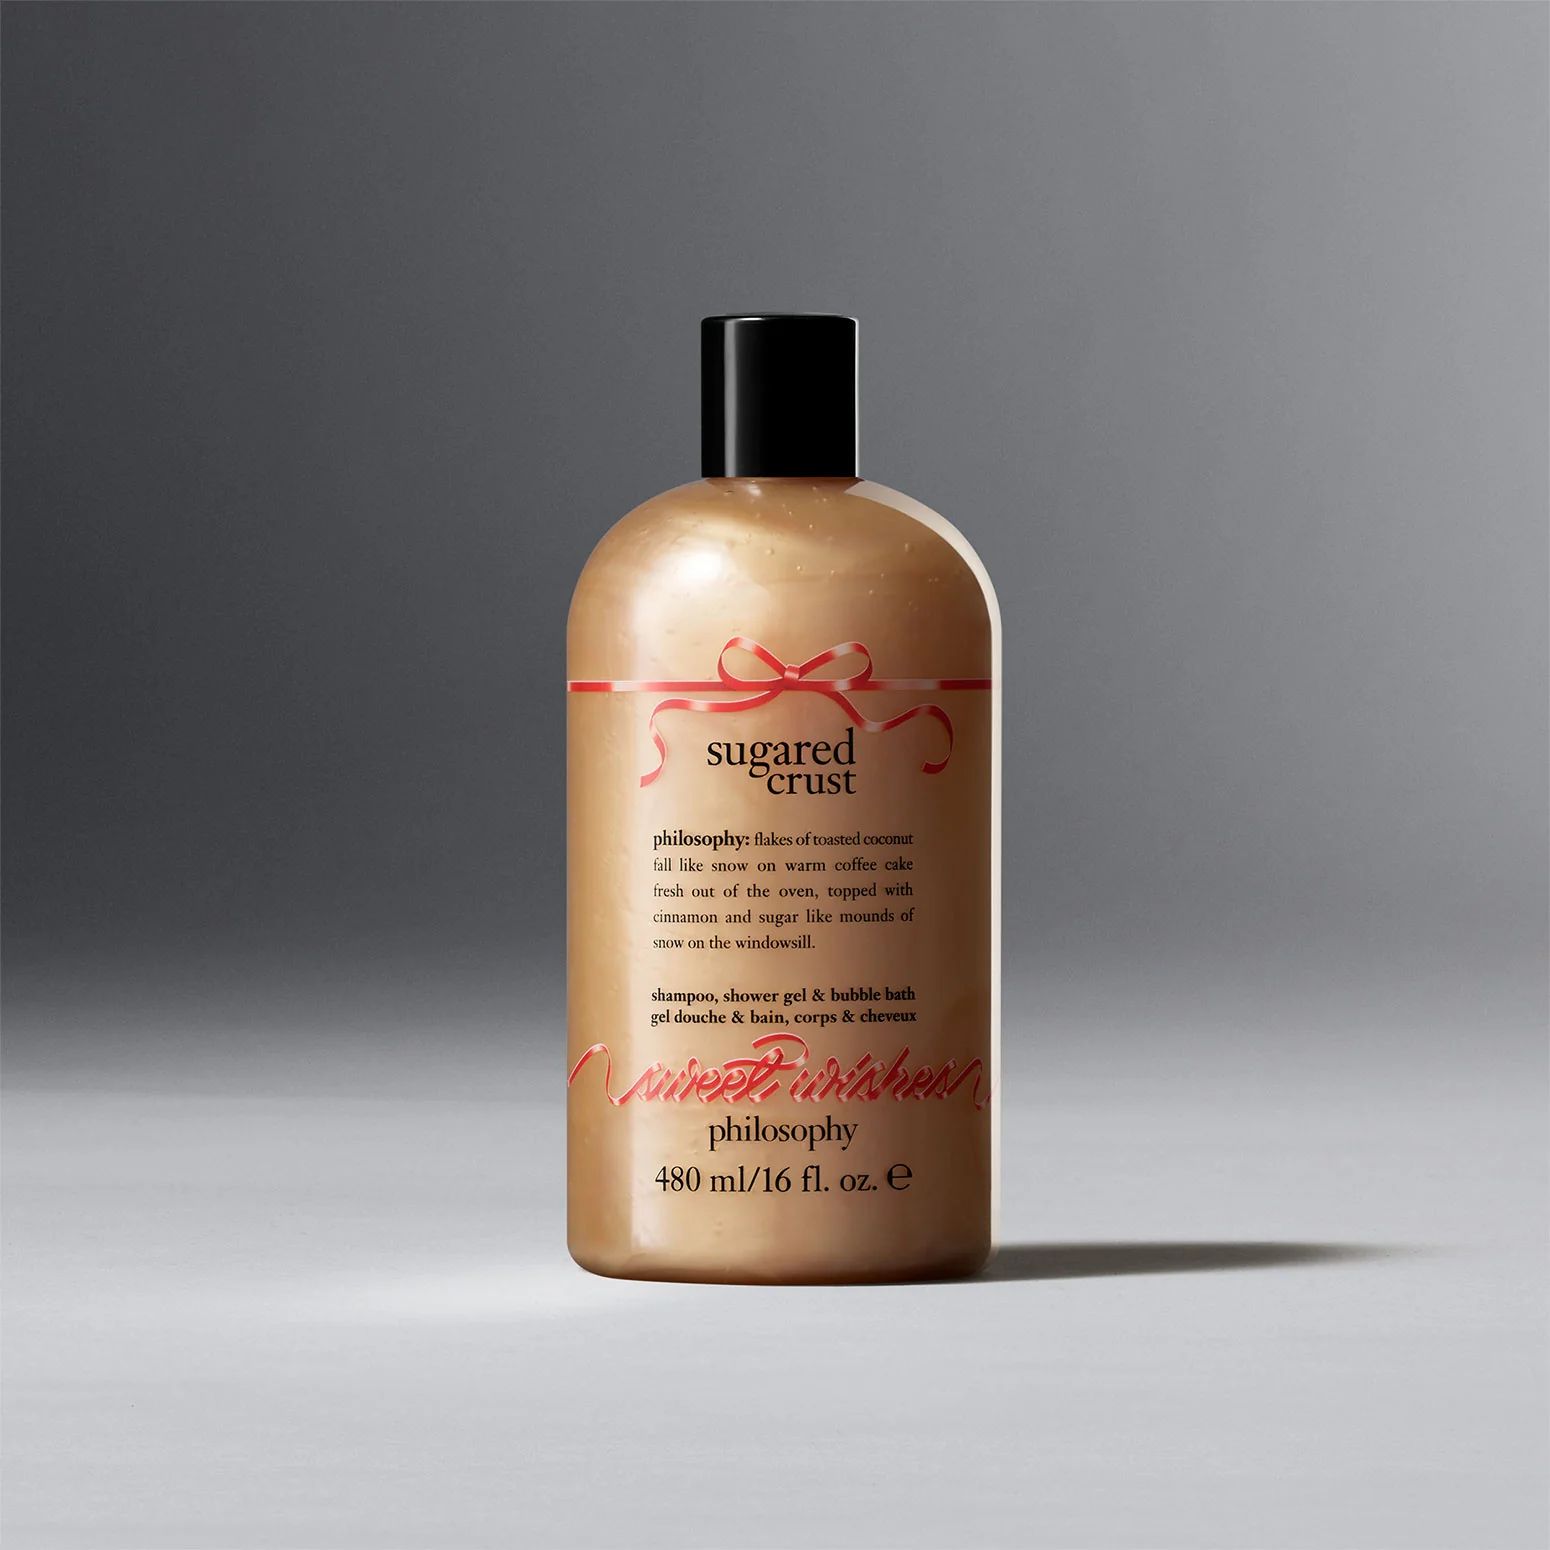 sugared crust shampoo, shower gel & bubble bath | Philosophy